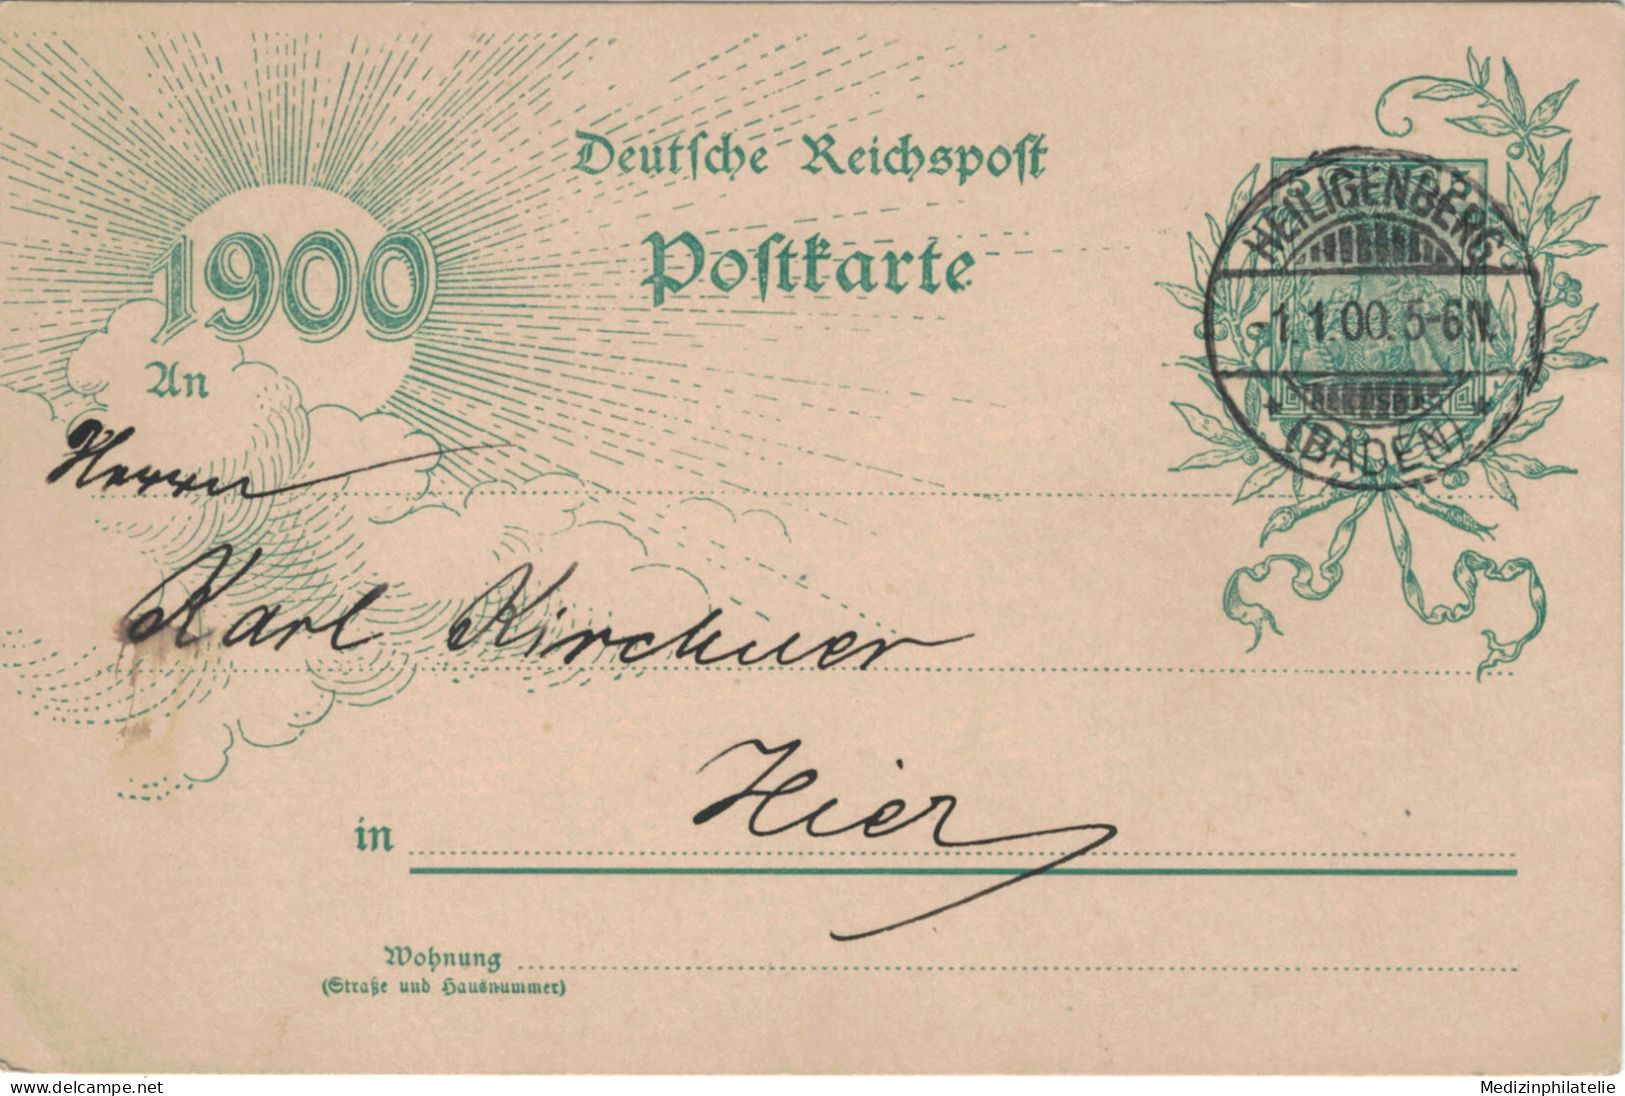 Ganzsache 5 Pfennig Jubiläumskarte 1900 - Ortskarte Heiligenberg 1.1.1900 - Cartes Postales